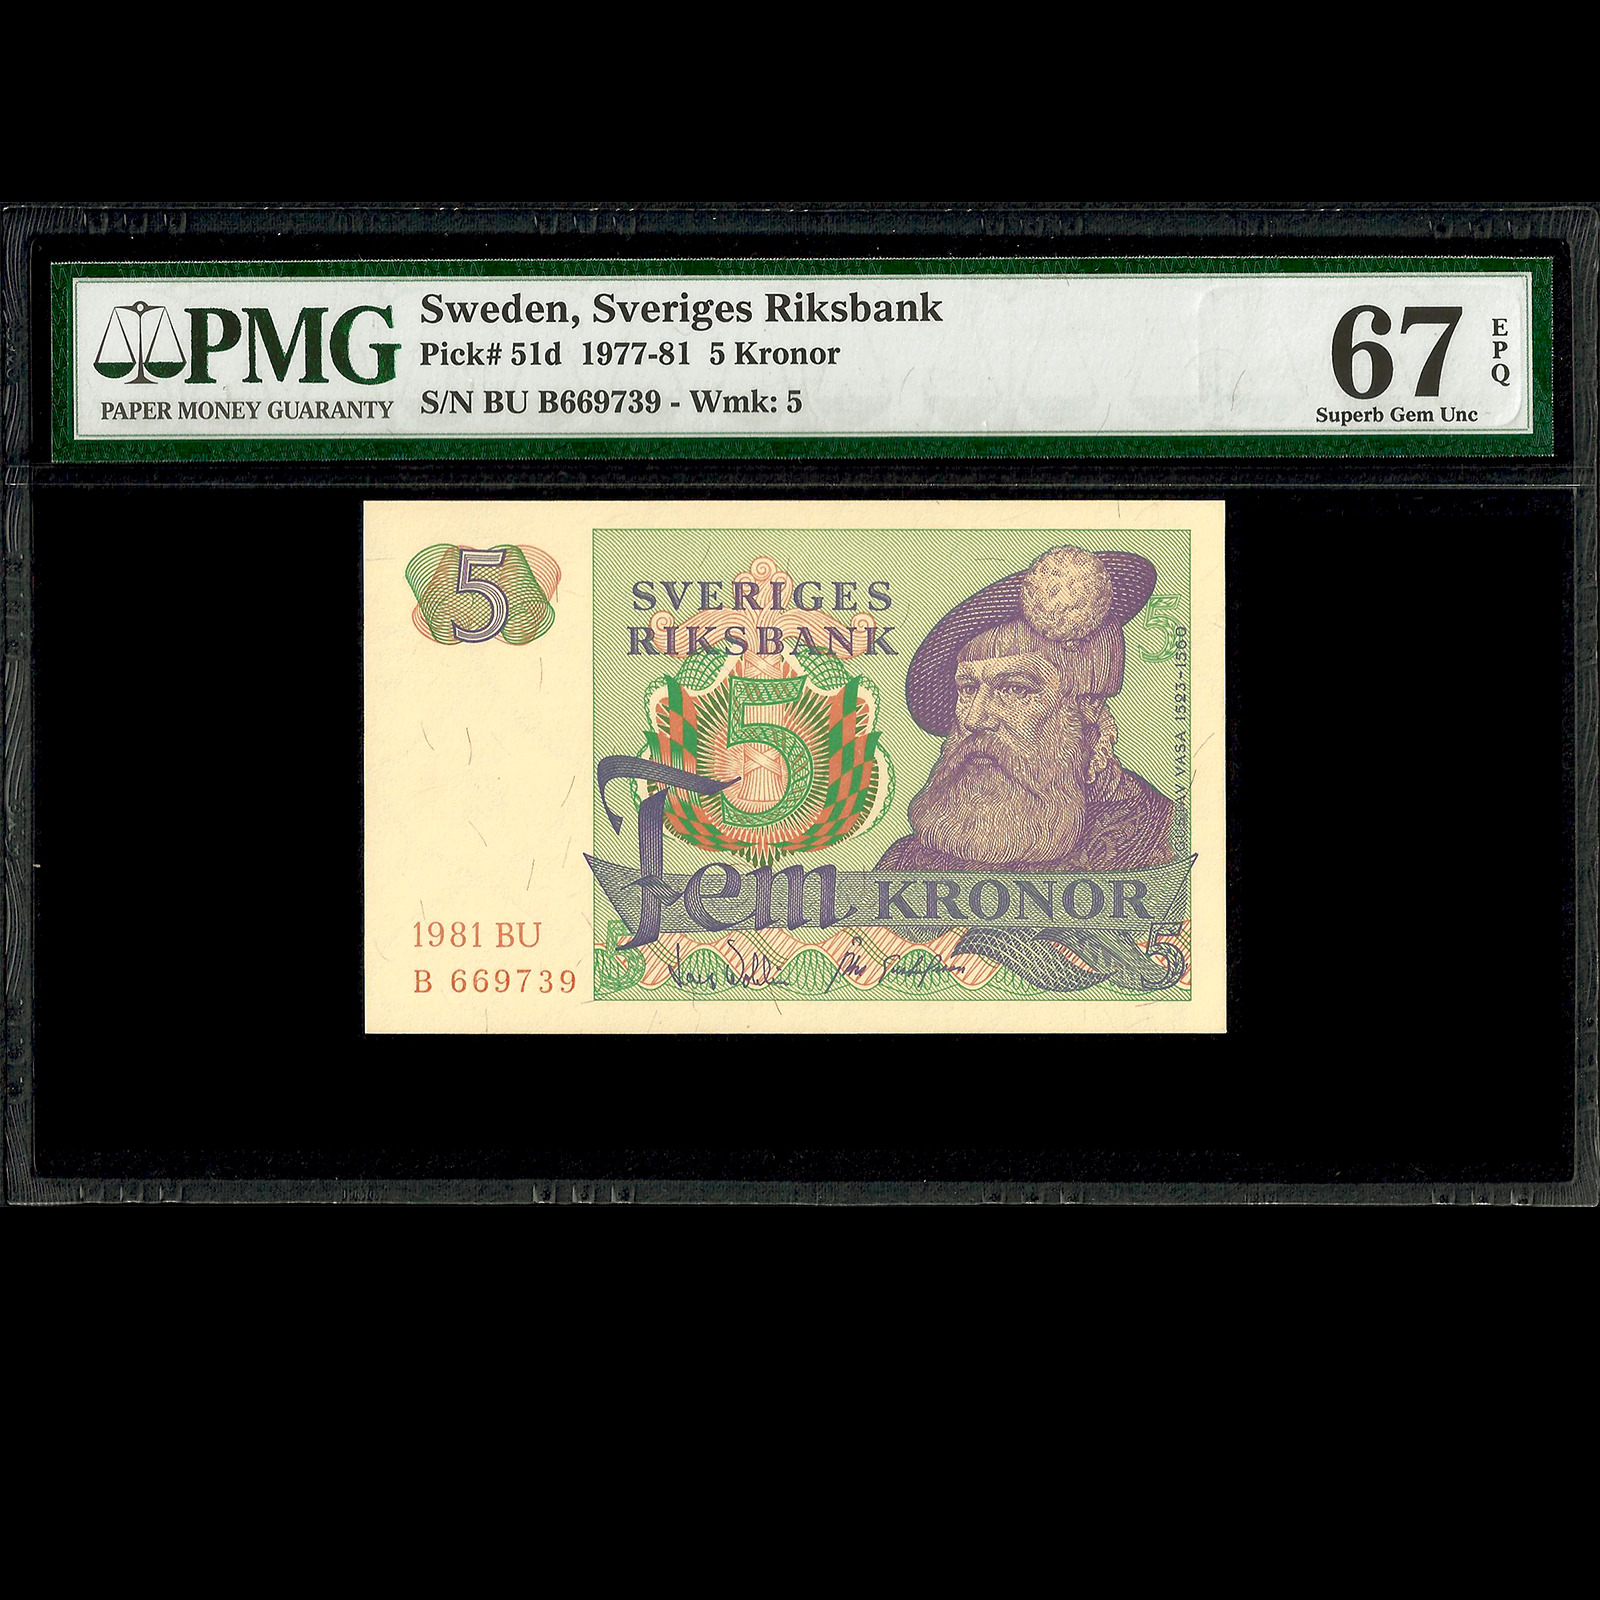 Sweden Sveriges Riksbank 5 Kronor 1981 PMG 67 SUPERB GEM UNC EPQ P-51d